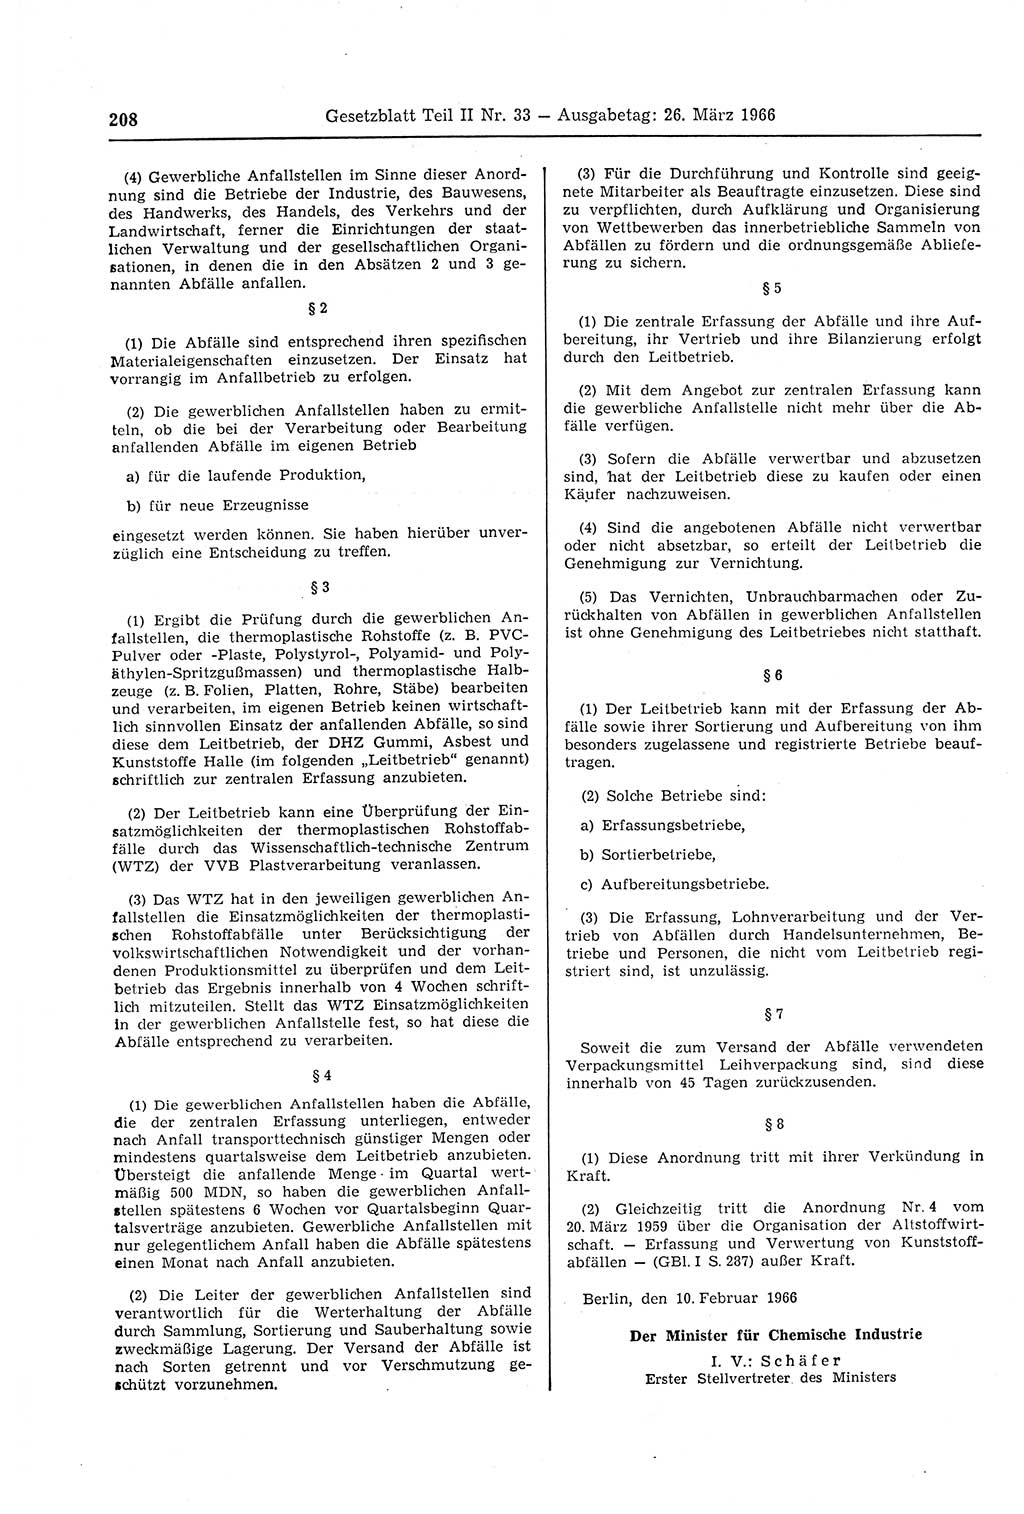 Gesetzblatt (GBl.) der Deutschen Demokratischen Republik (DDR) Teil ⅠⅠ 1966, Seite 208 (GBl. DDR ⅠⅠ 1966, S. 208)